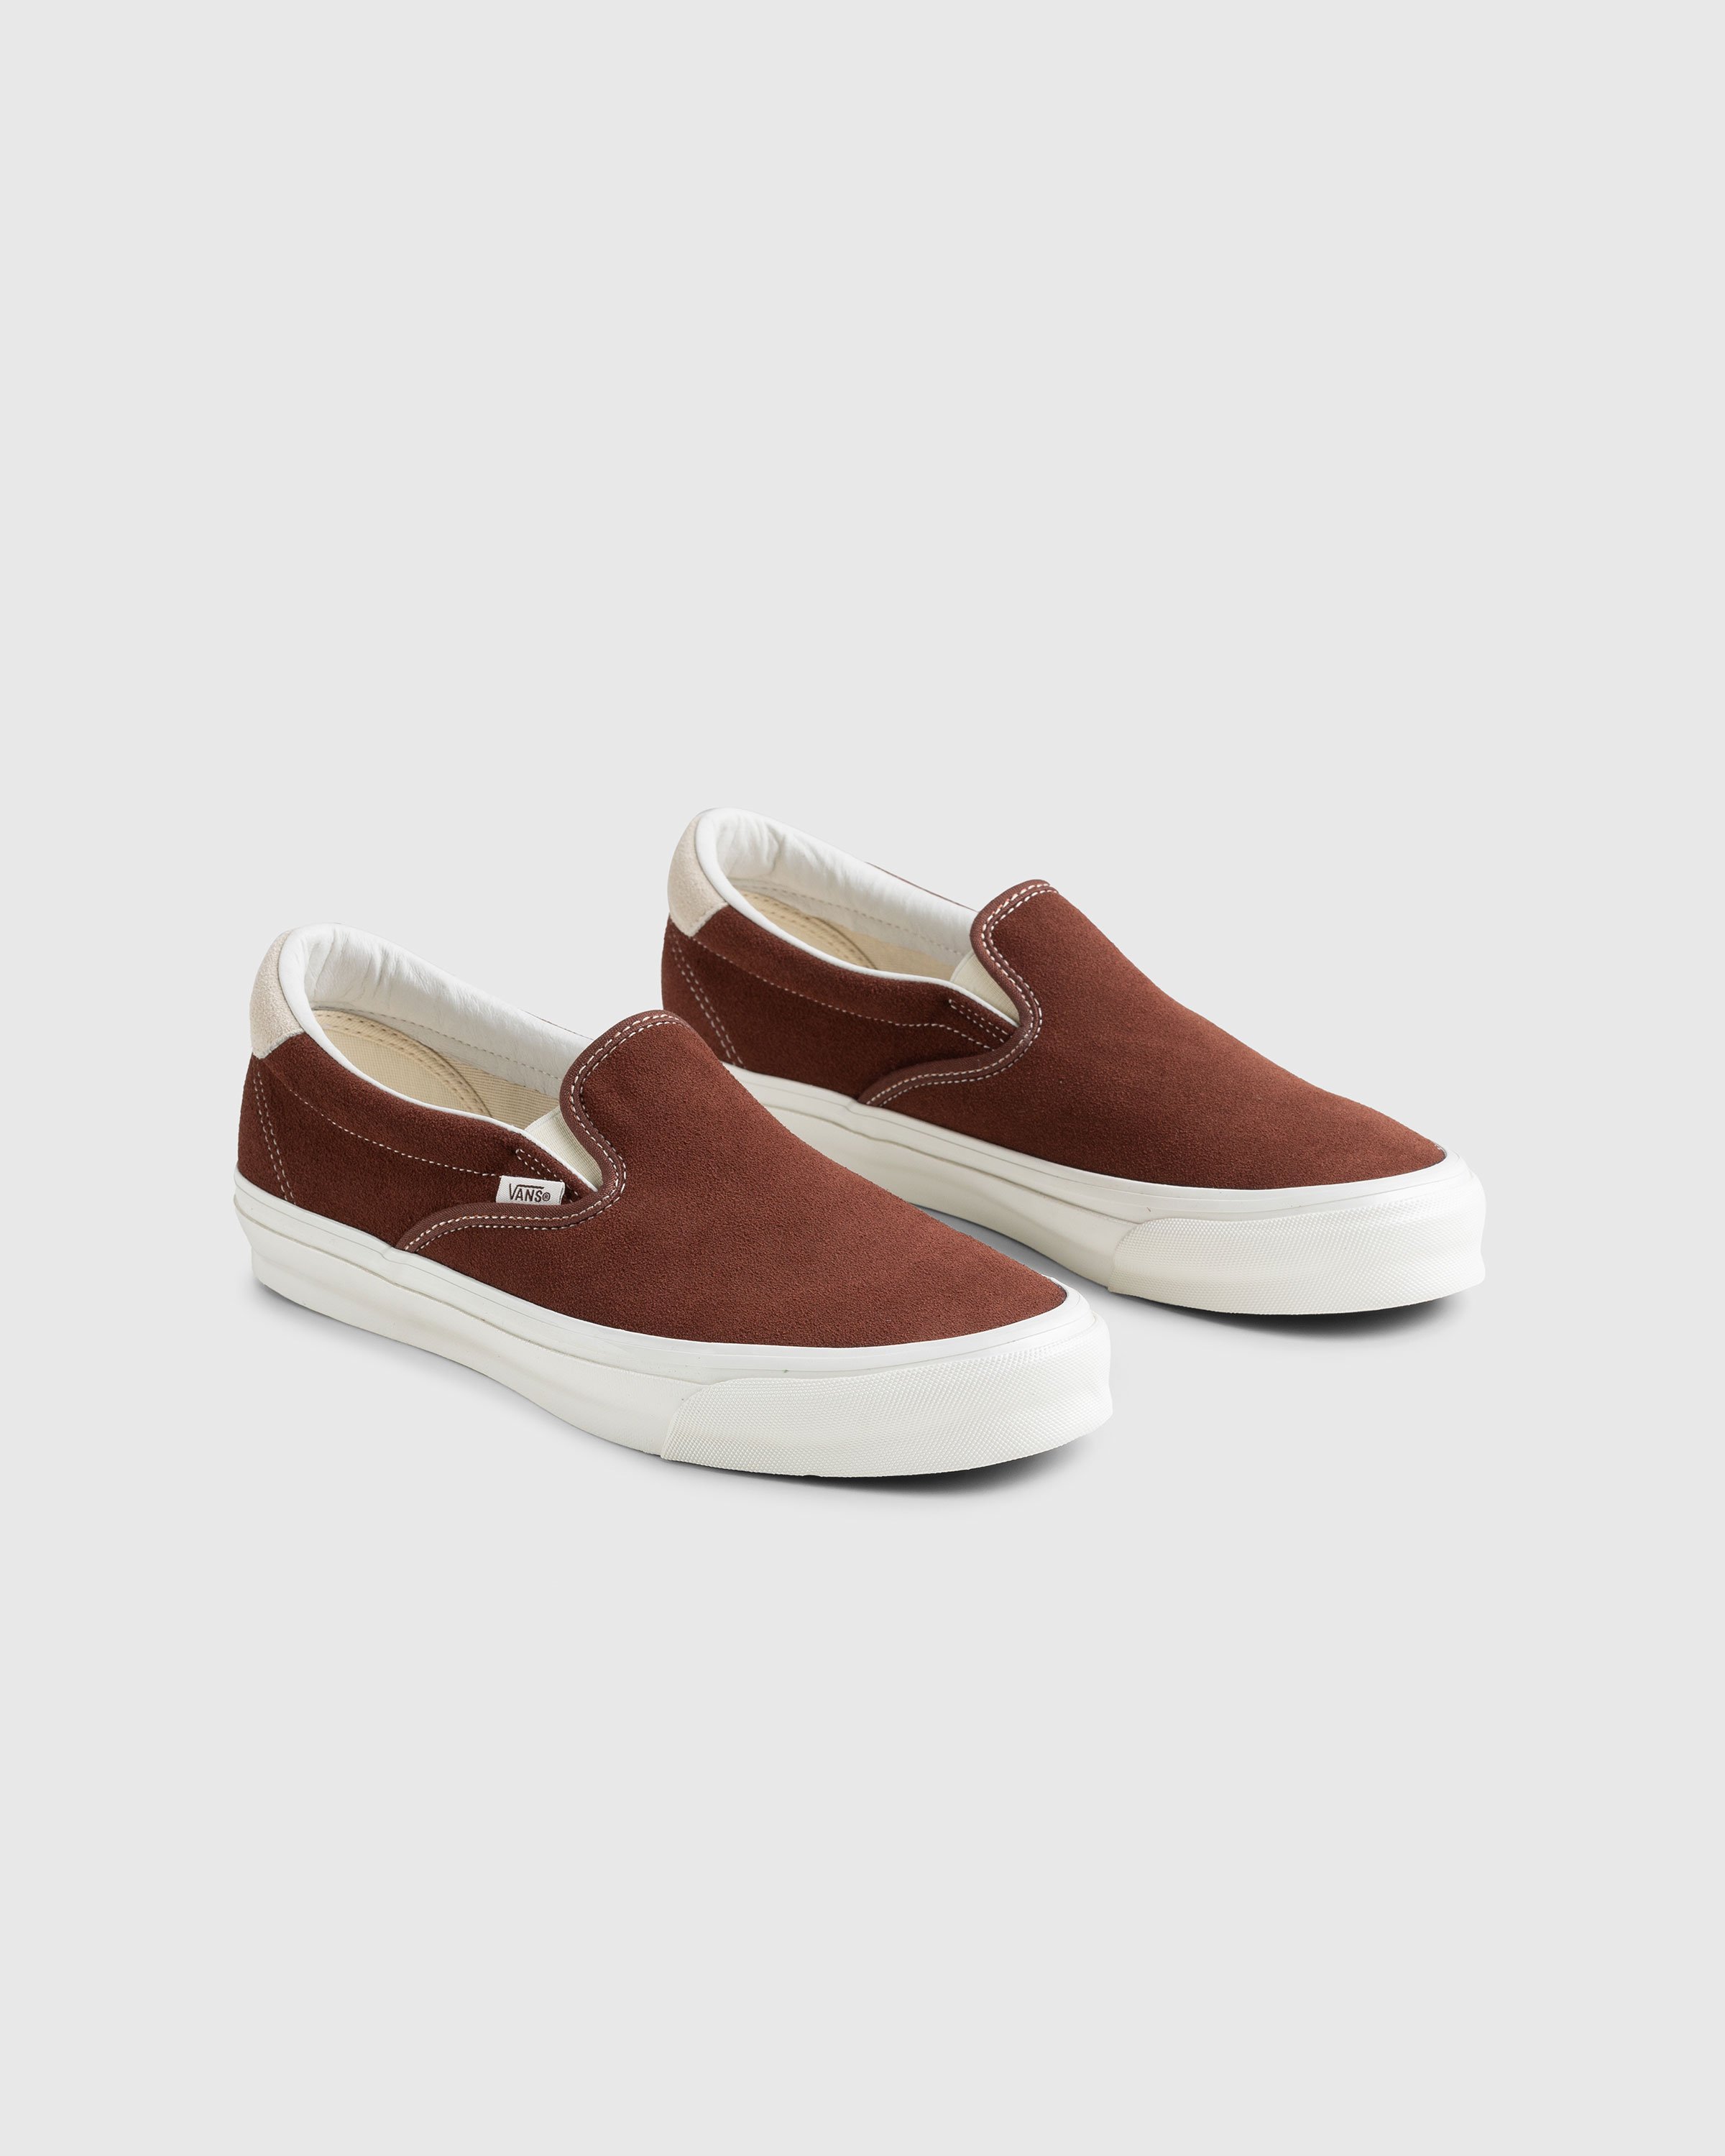 Vans - OG Slip-On 59 LX Suede Brown - Footwear - Brown - Image 3